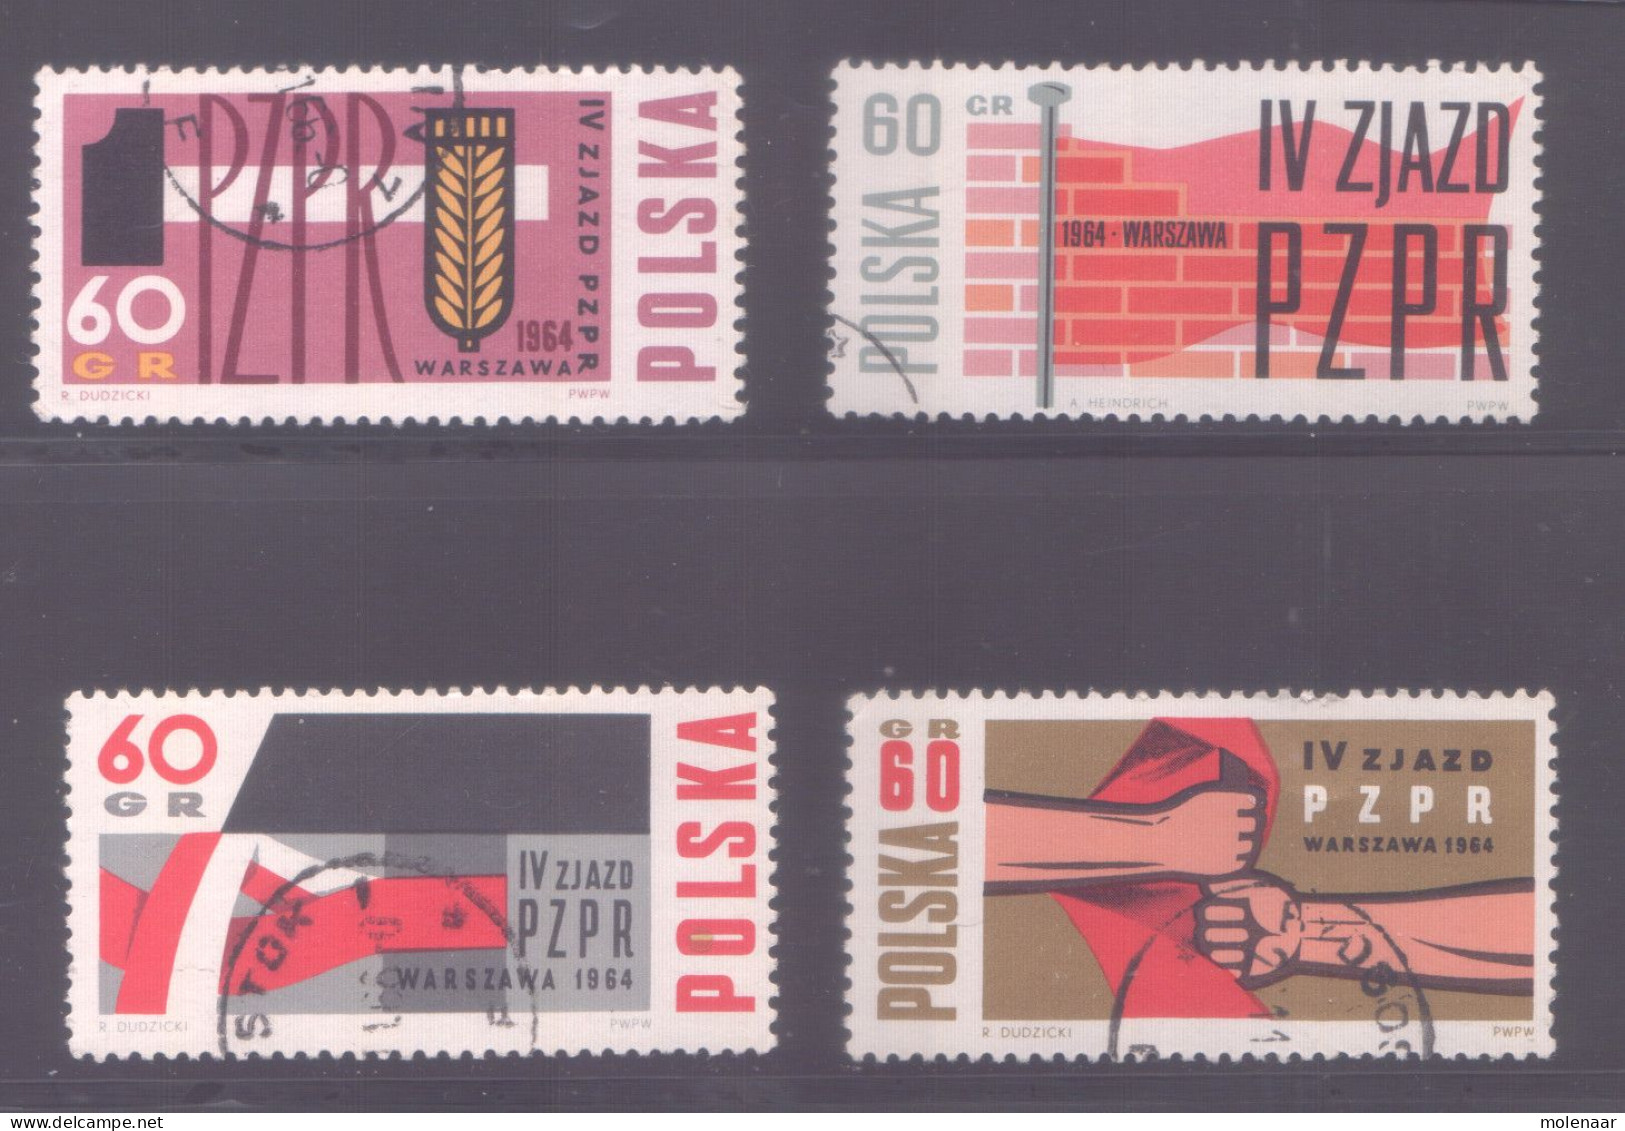 Postzegels > Europa > Polen > 1944-.... Republiek > 1971-80 > Gebruikt No.  1492-1495 (11960) - Brieven En Documenten